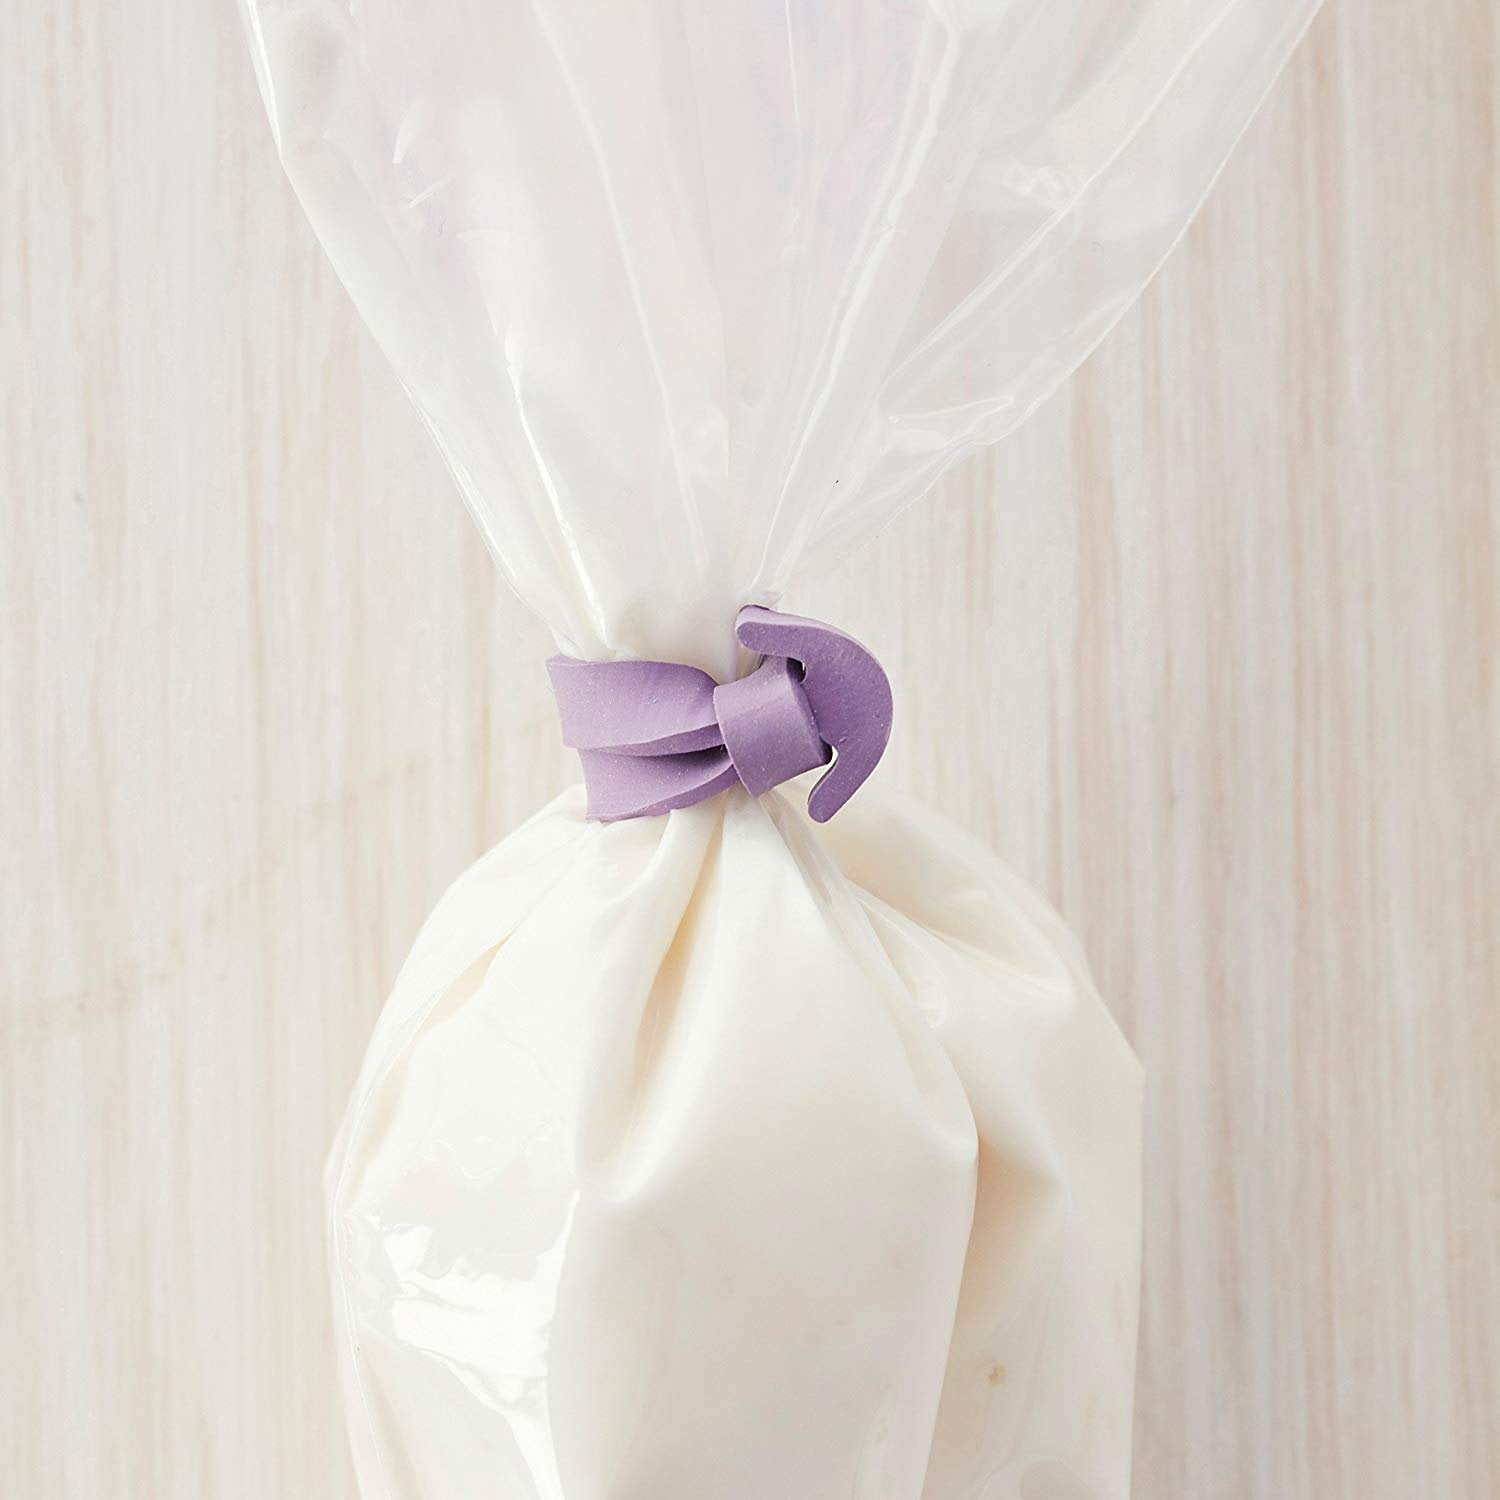 30 Pcs Pastry Bag Ties, Silicone Icing Bag Ties, Reusable Piping Bag T –  SHANULKA Home Decor